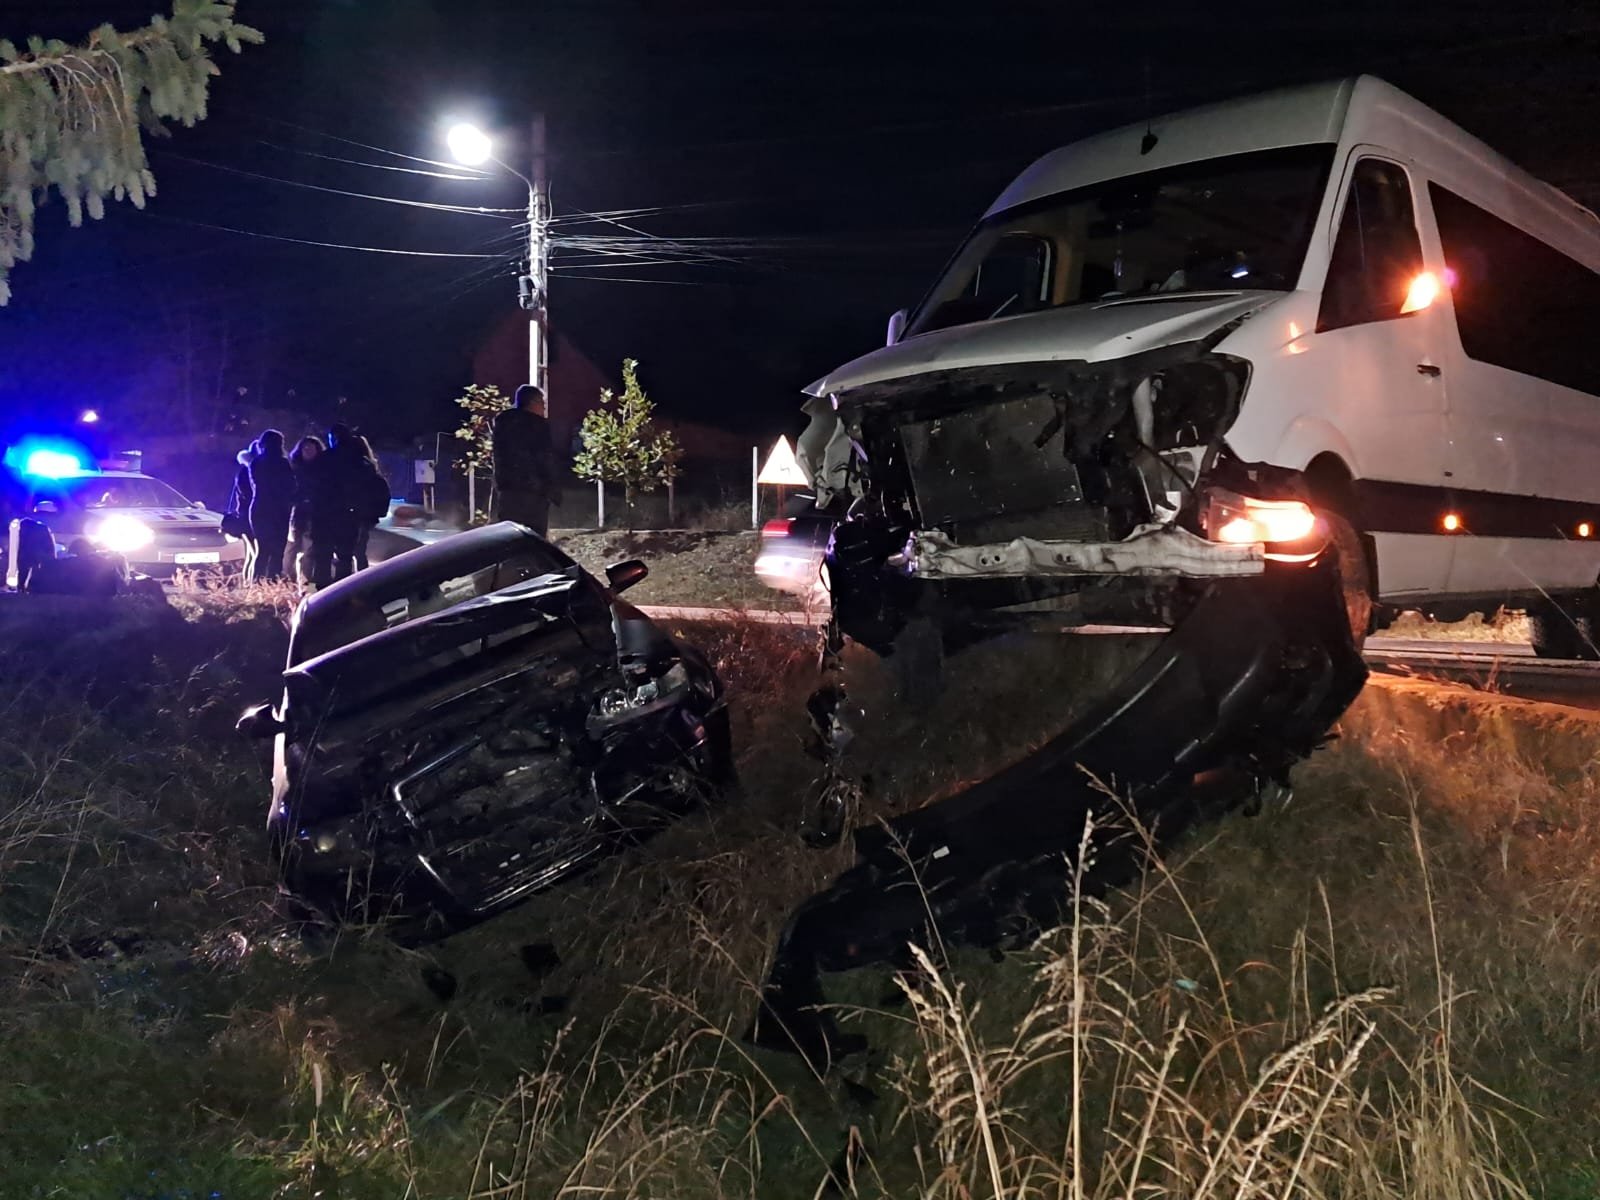  VIDEO/FOTO Microbuz cu 7 persoane implicat într-un accident la Chicerea/Tomești. Un copil a fost rănit